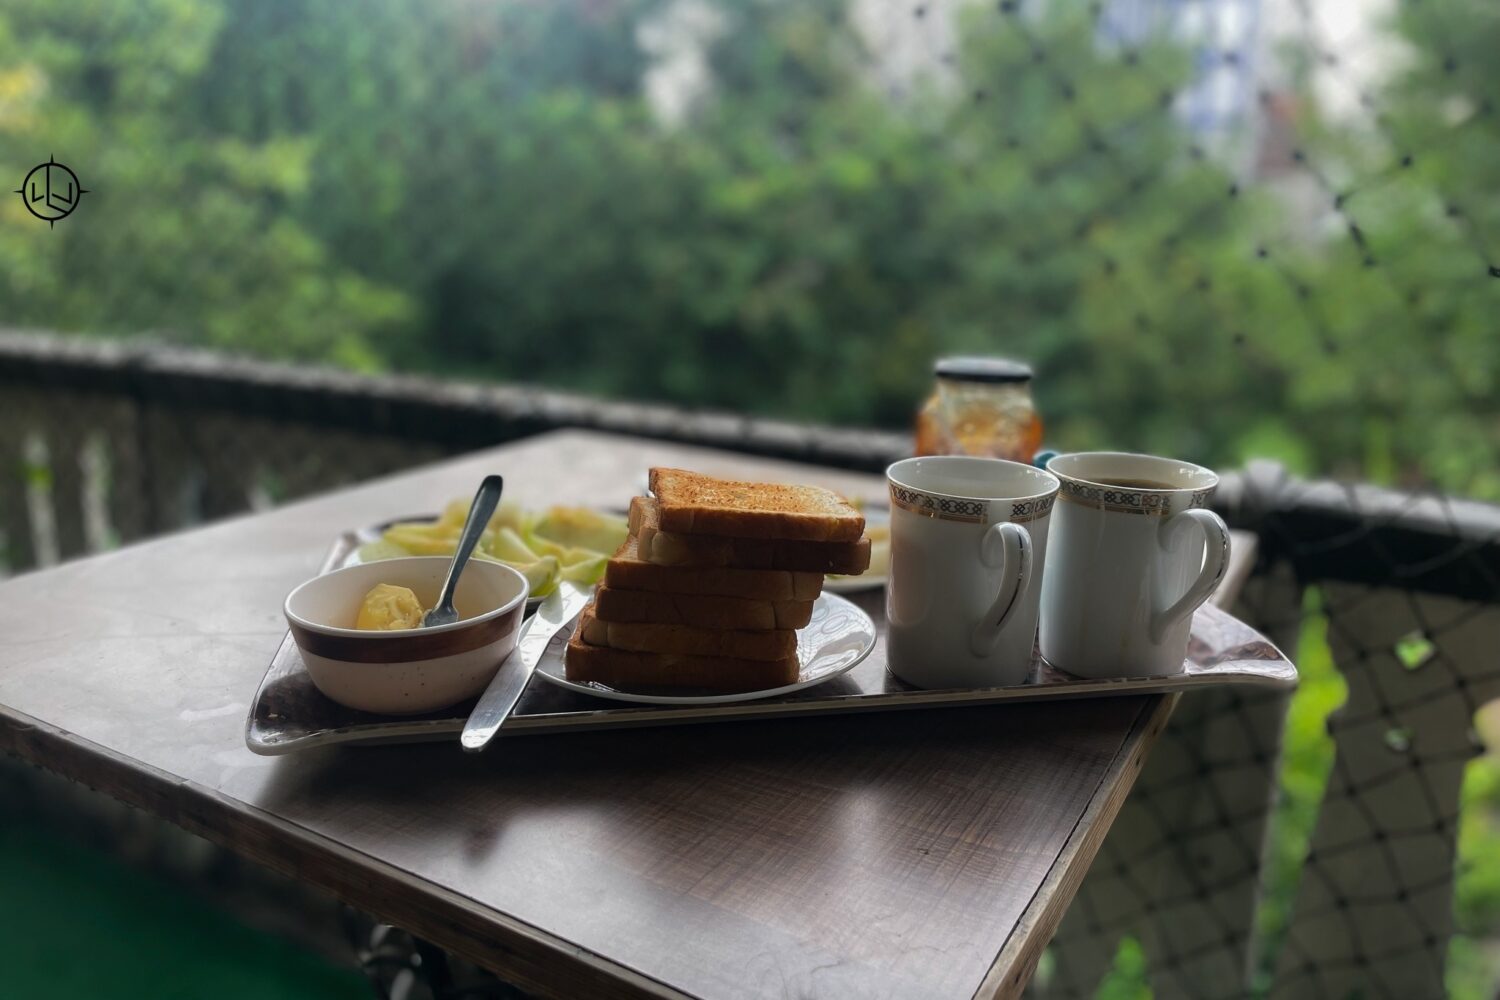 Breakfast in Kashmir